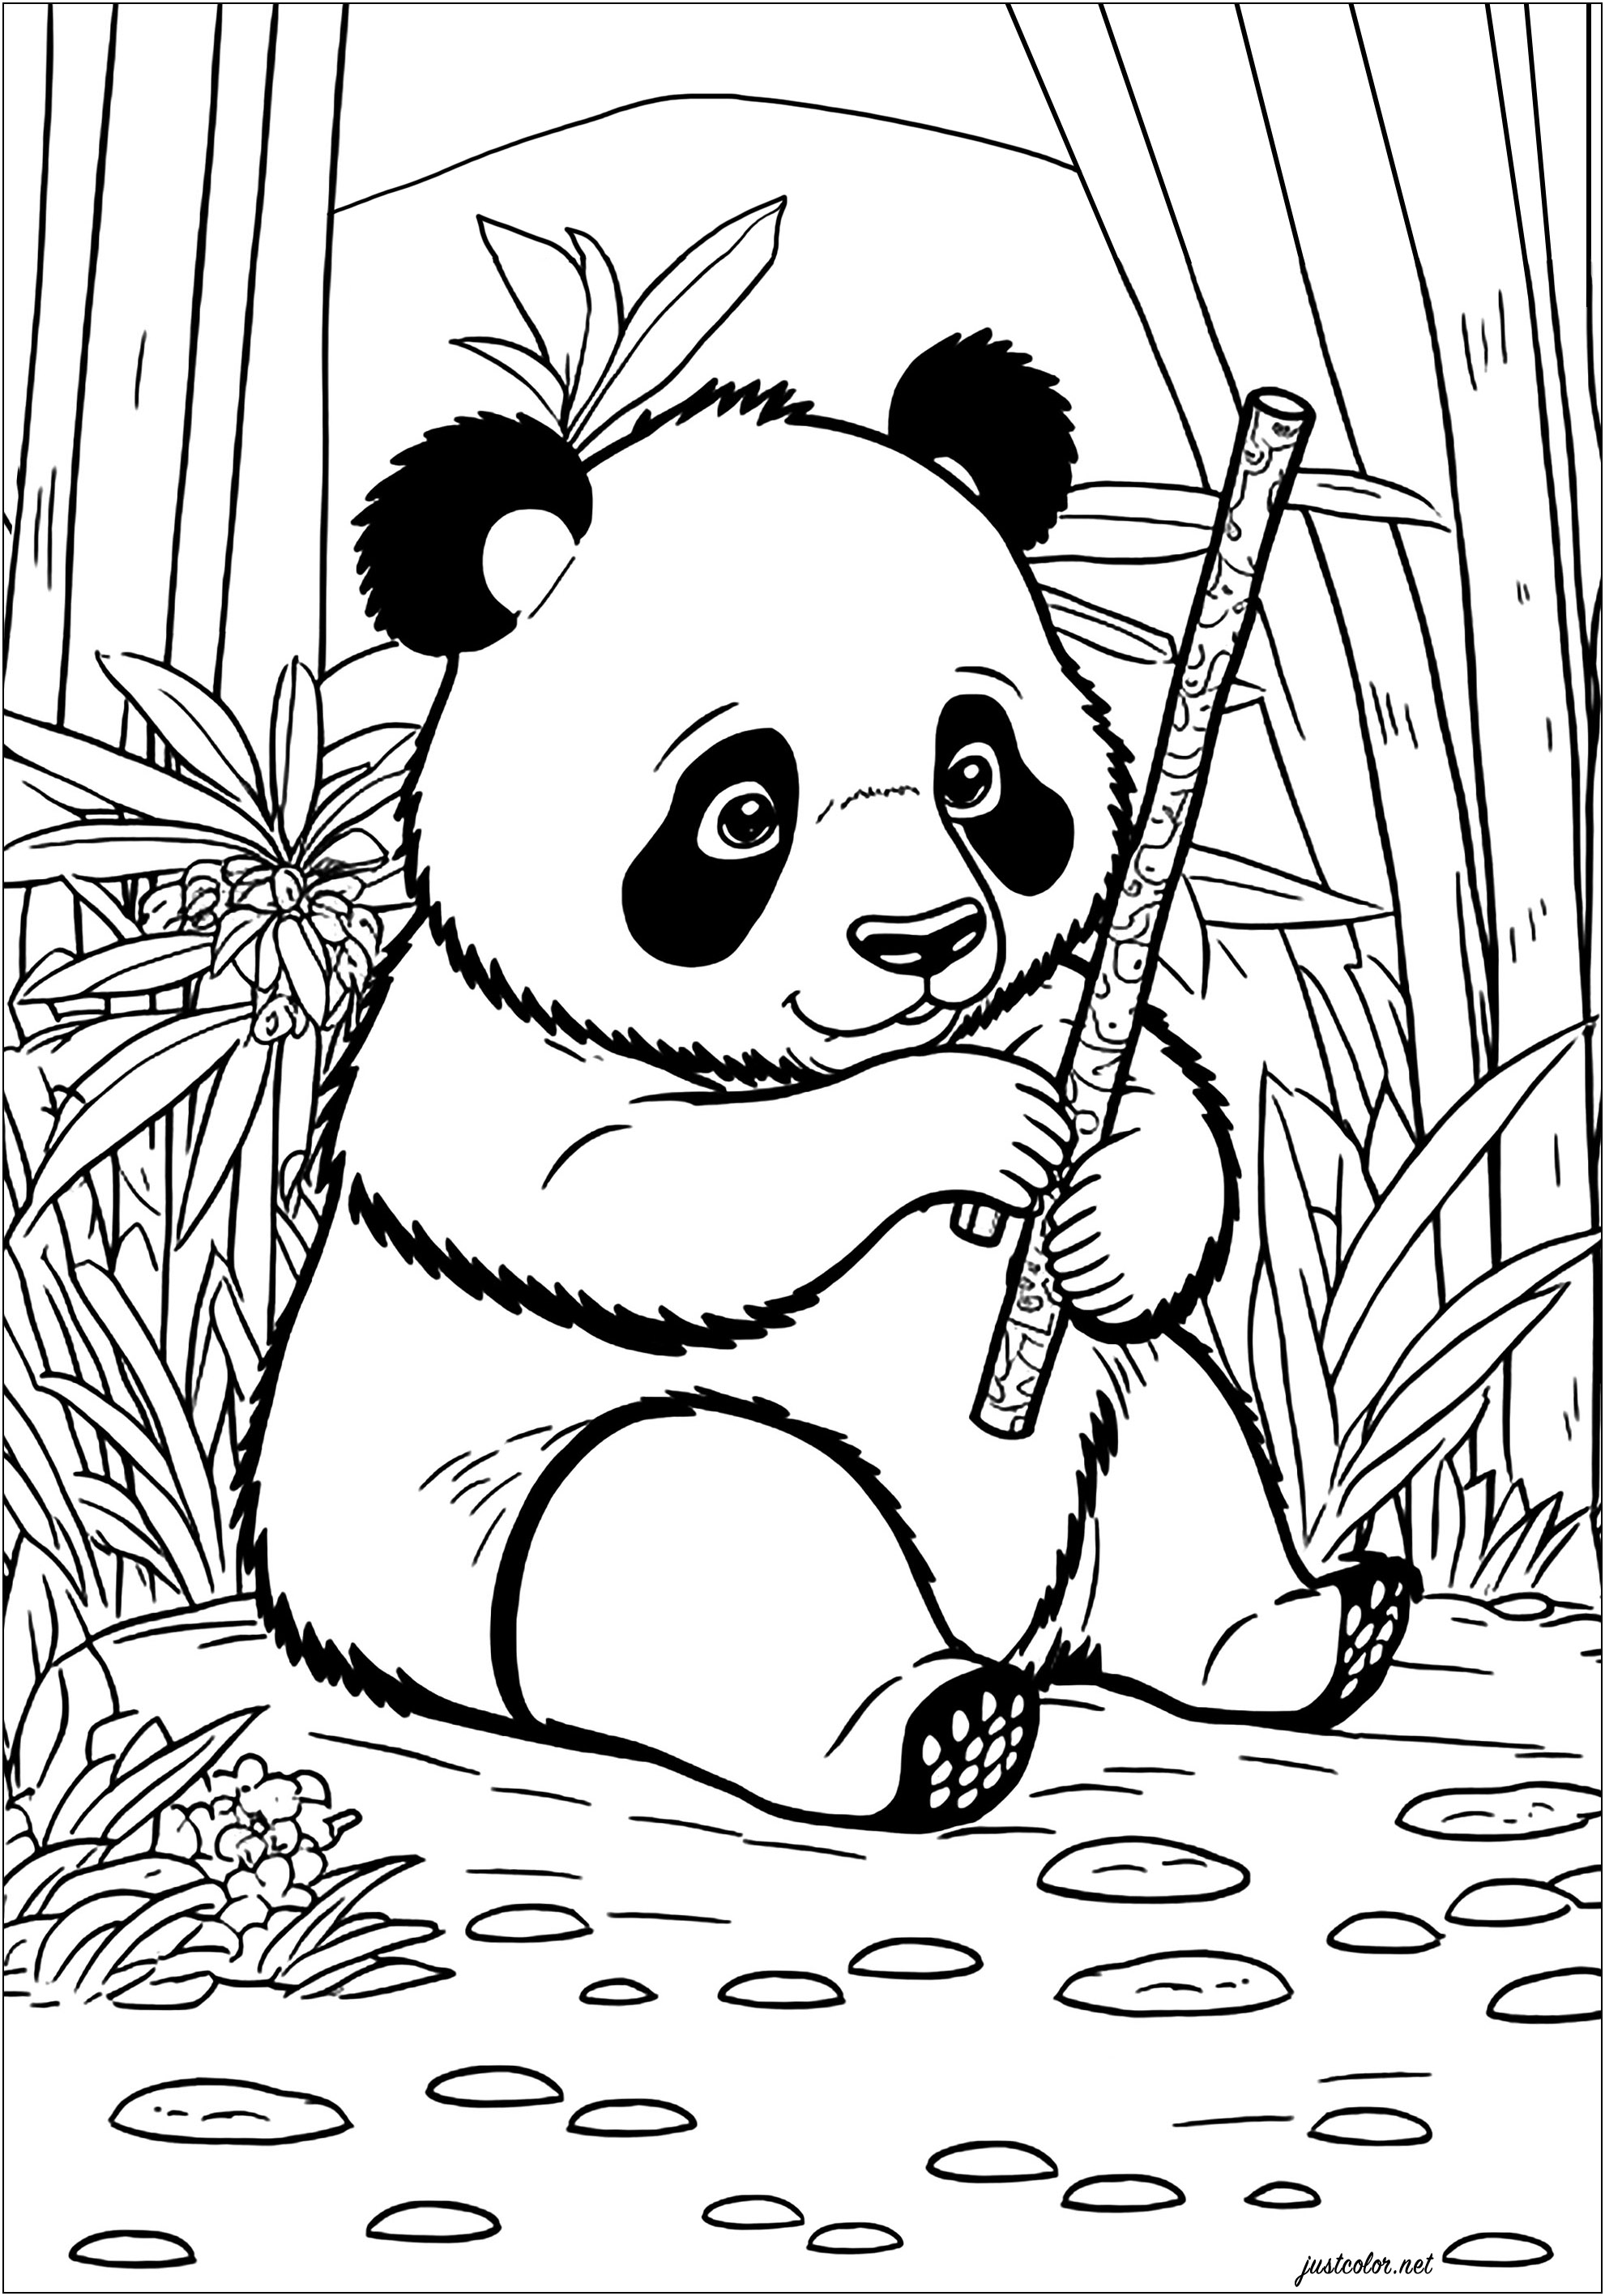 Panda jovem a comer bambu. Este panda de bochechas redondas com uma expressão brincalhona está sentado numa floresta luxuriante cheia de bambus altos. Ele come alegremente um caule de bambu, parece ter muita fome!